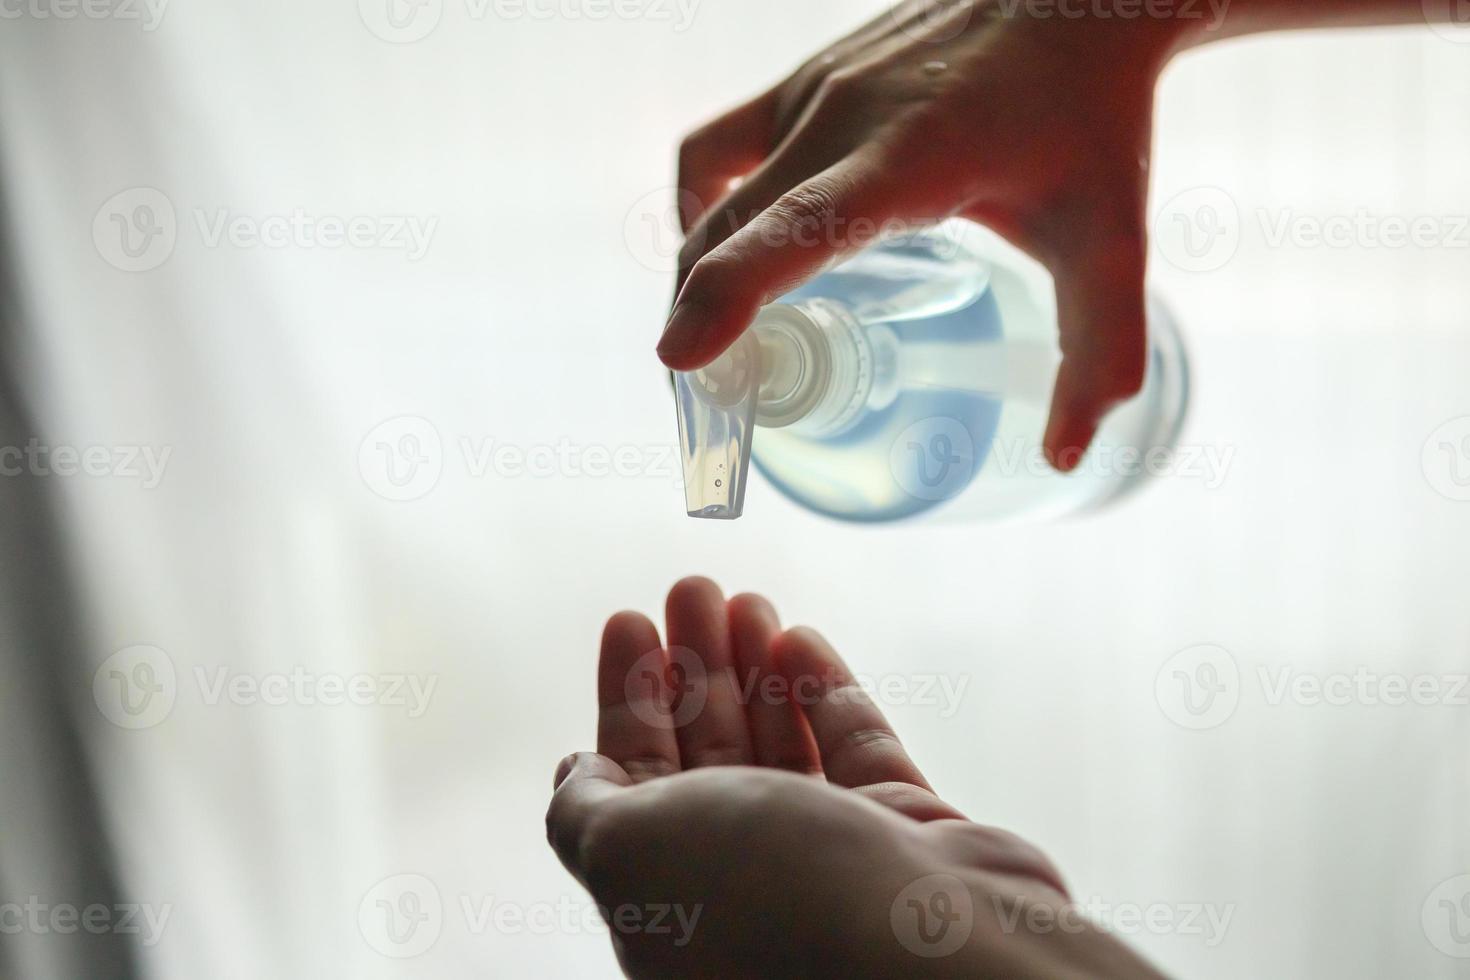 mujer que usa gel desinfectante con alcohol para limpiar la mano concepto de prevención del virus corona covid-19 foto